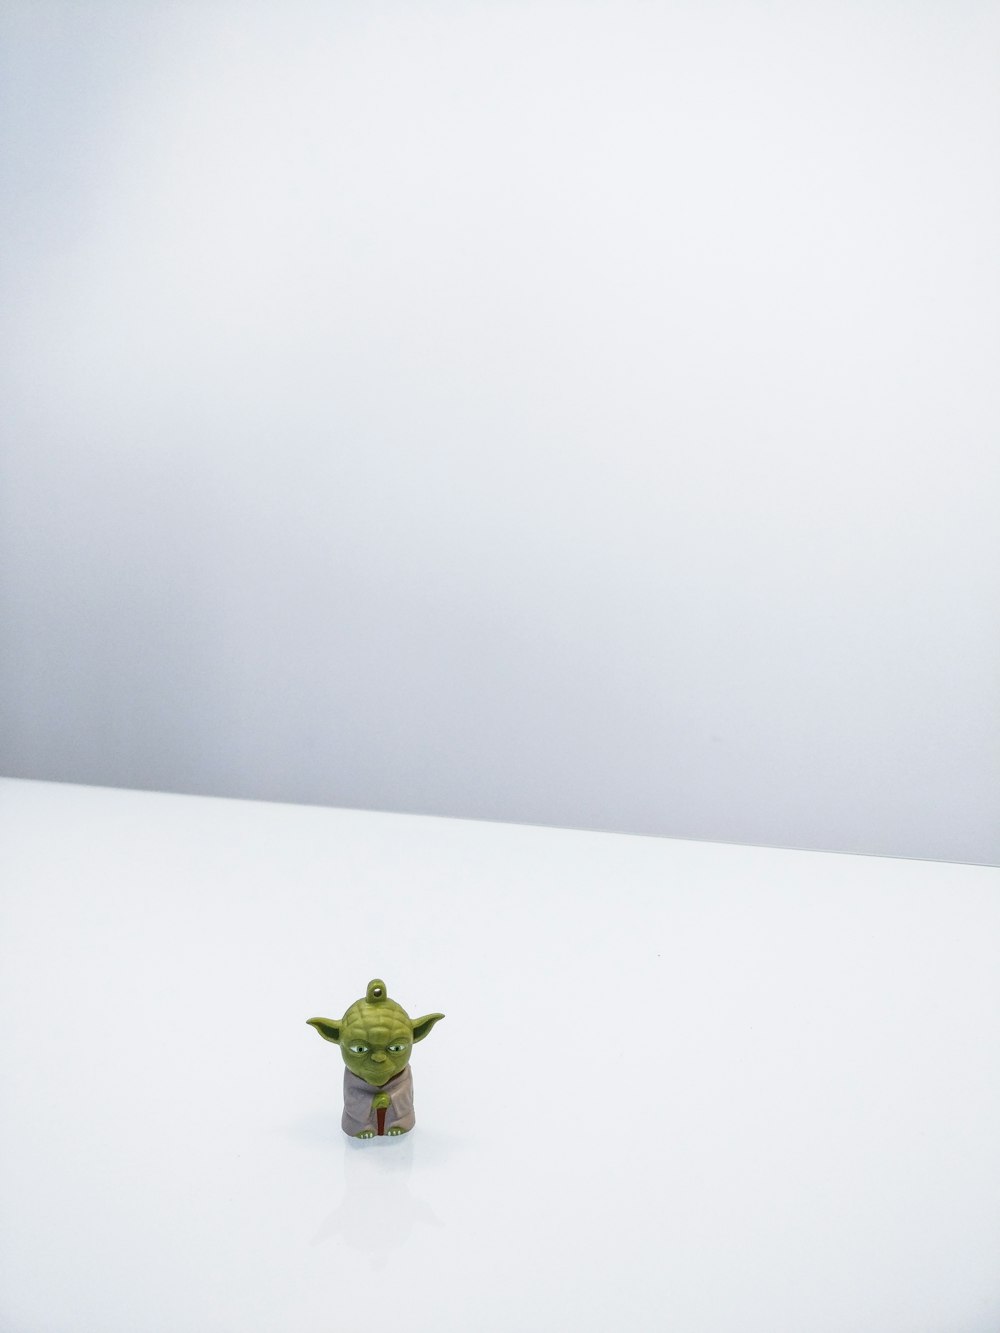 Star Wars Meister Yoda Minifigur auf weißer Oberfläche